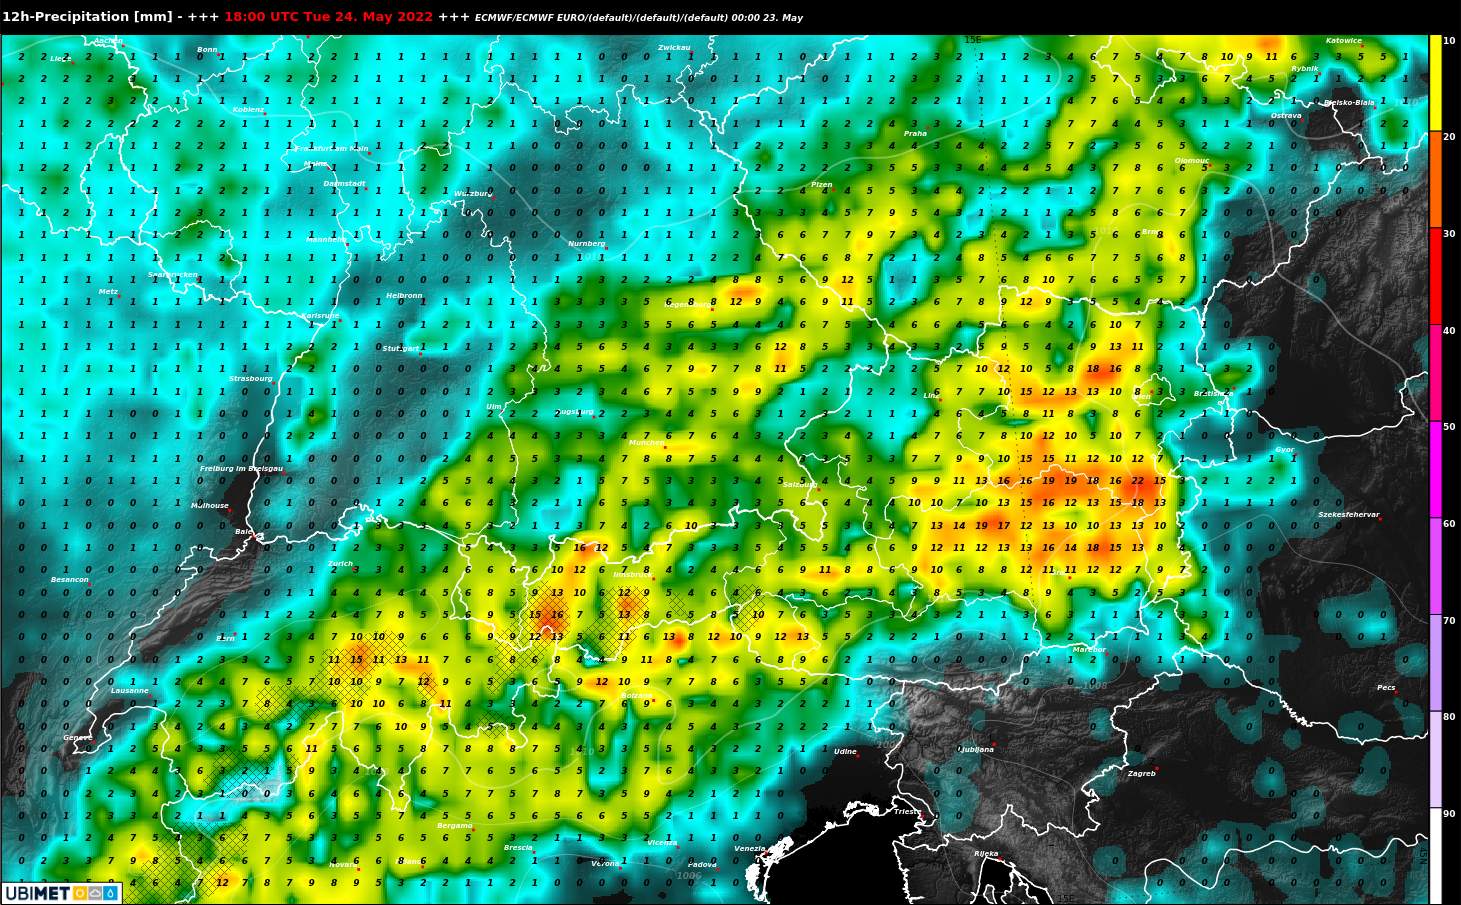 Abb. 4: Regensumme morgen zwischen 8 und 20 Uhr nach dem europäischen Wettermodell ECMWF